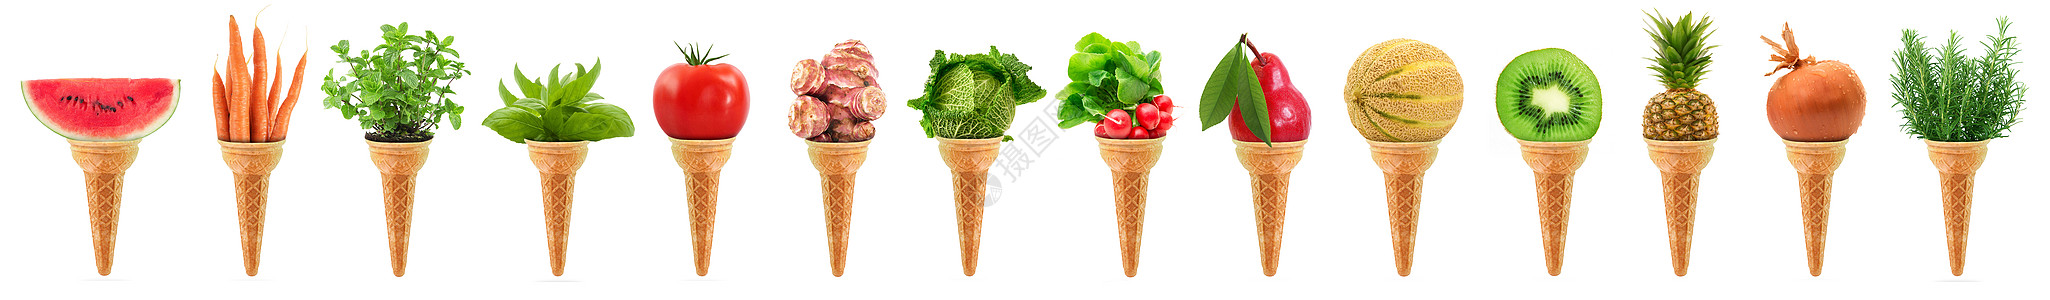 美味的冰淇淋冰淇淋 长长的拼图图片